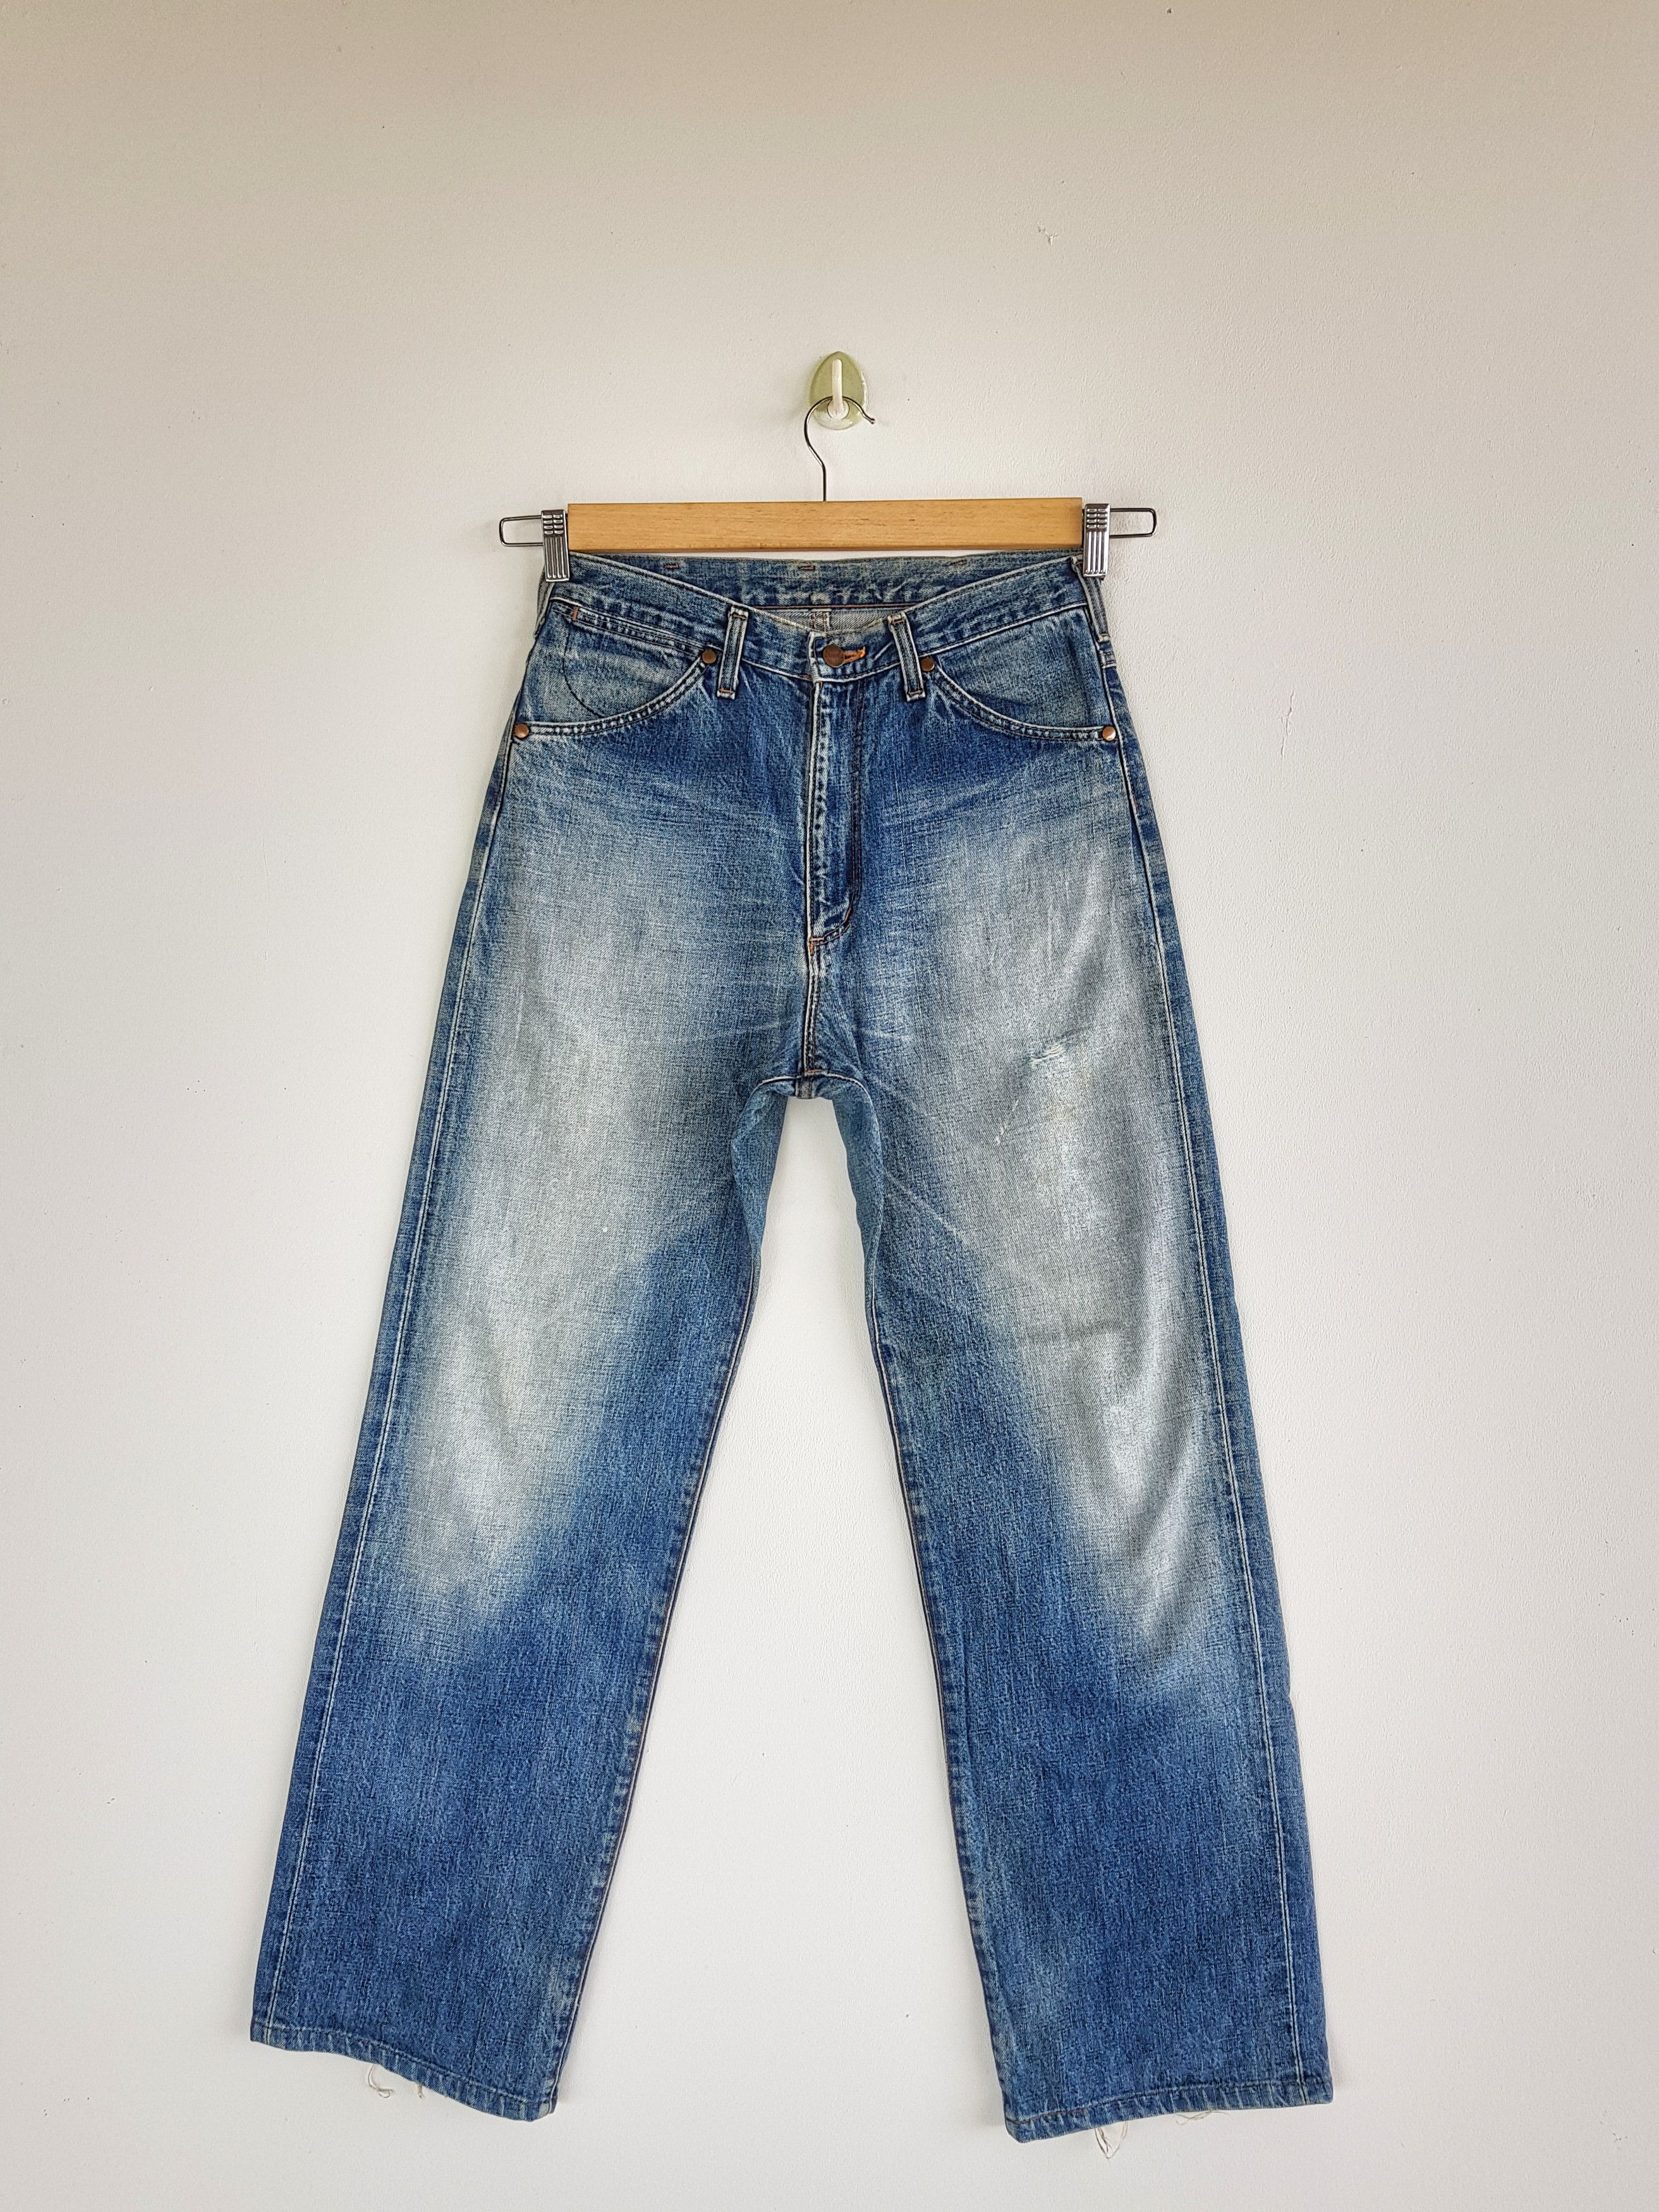 Vintage Wrangler Selvedge Jeans Redline Wrangler Distressed Denim | Grailed